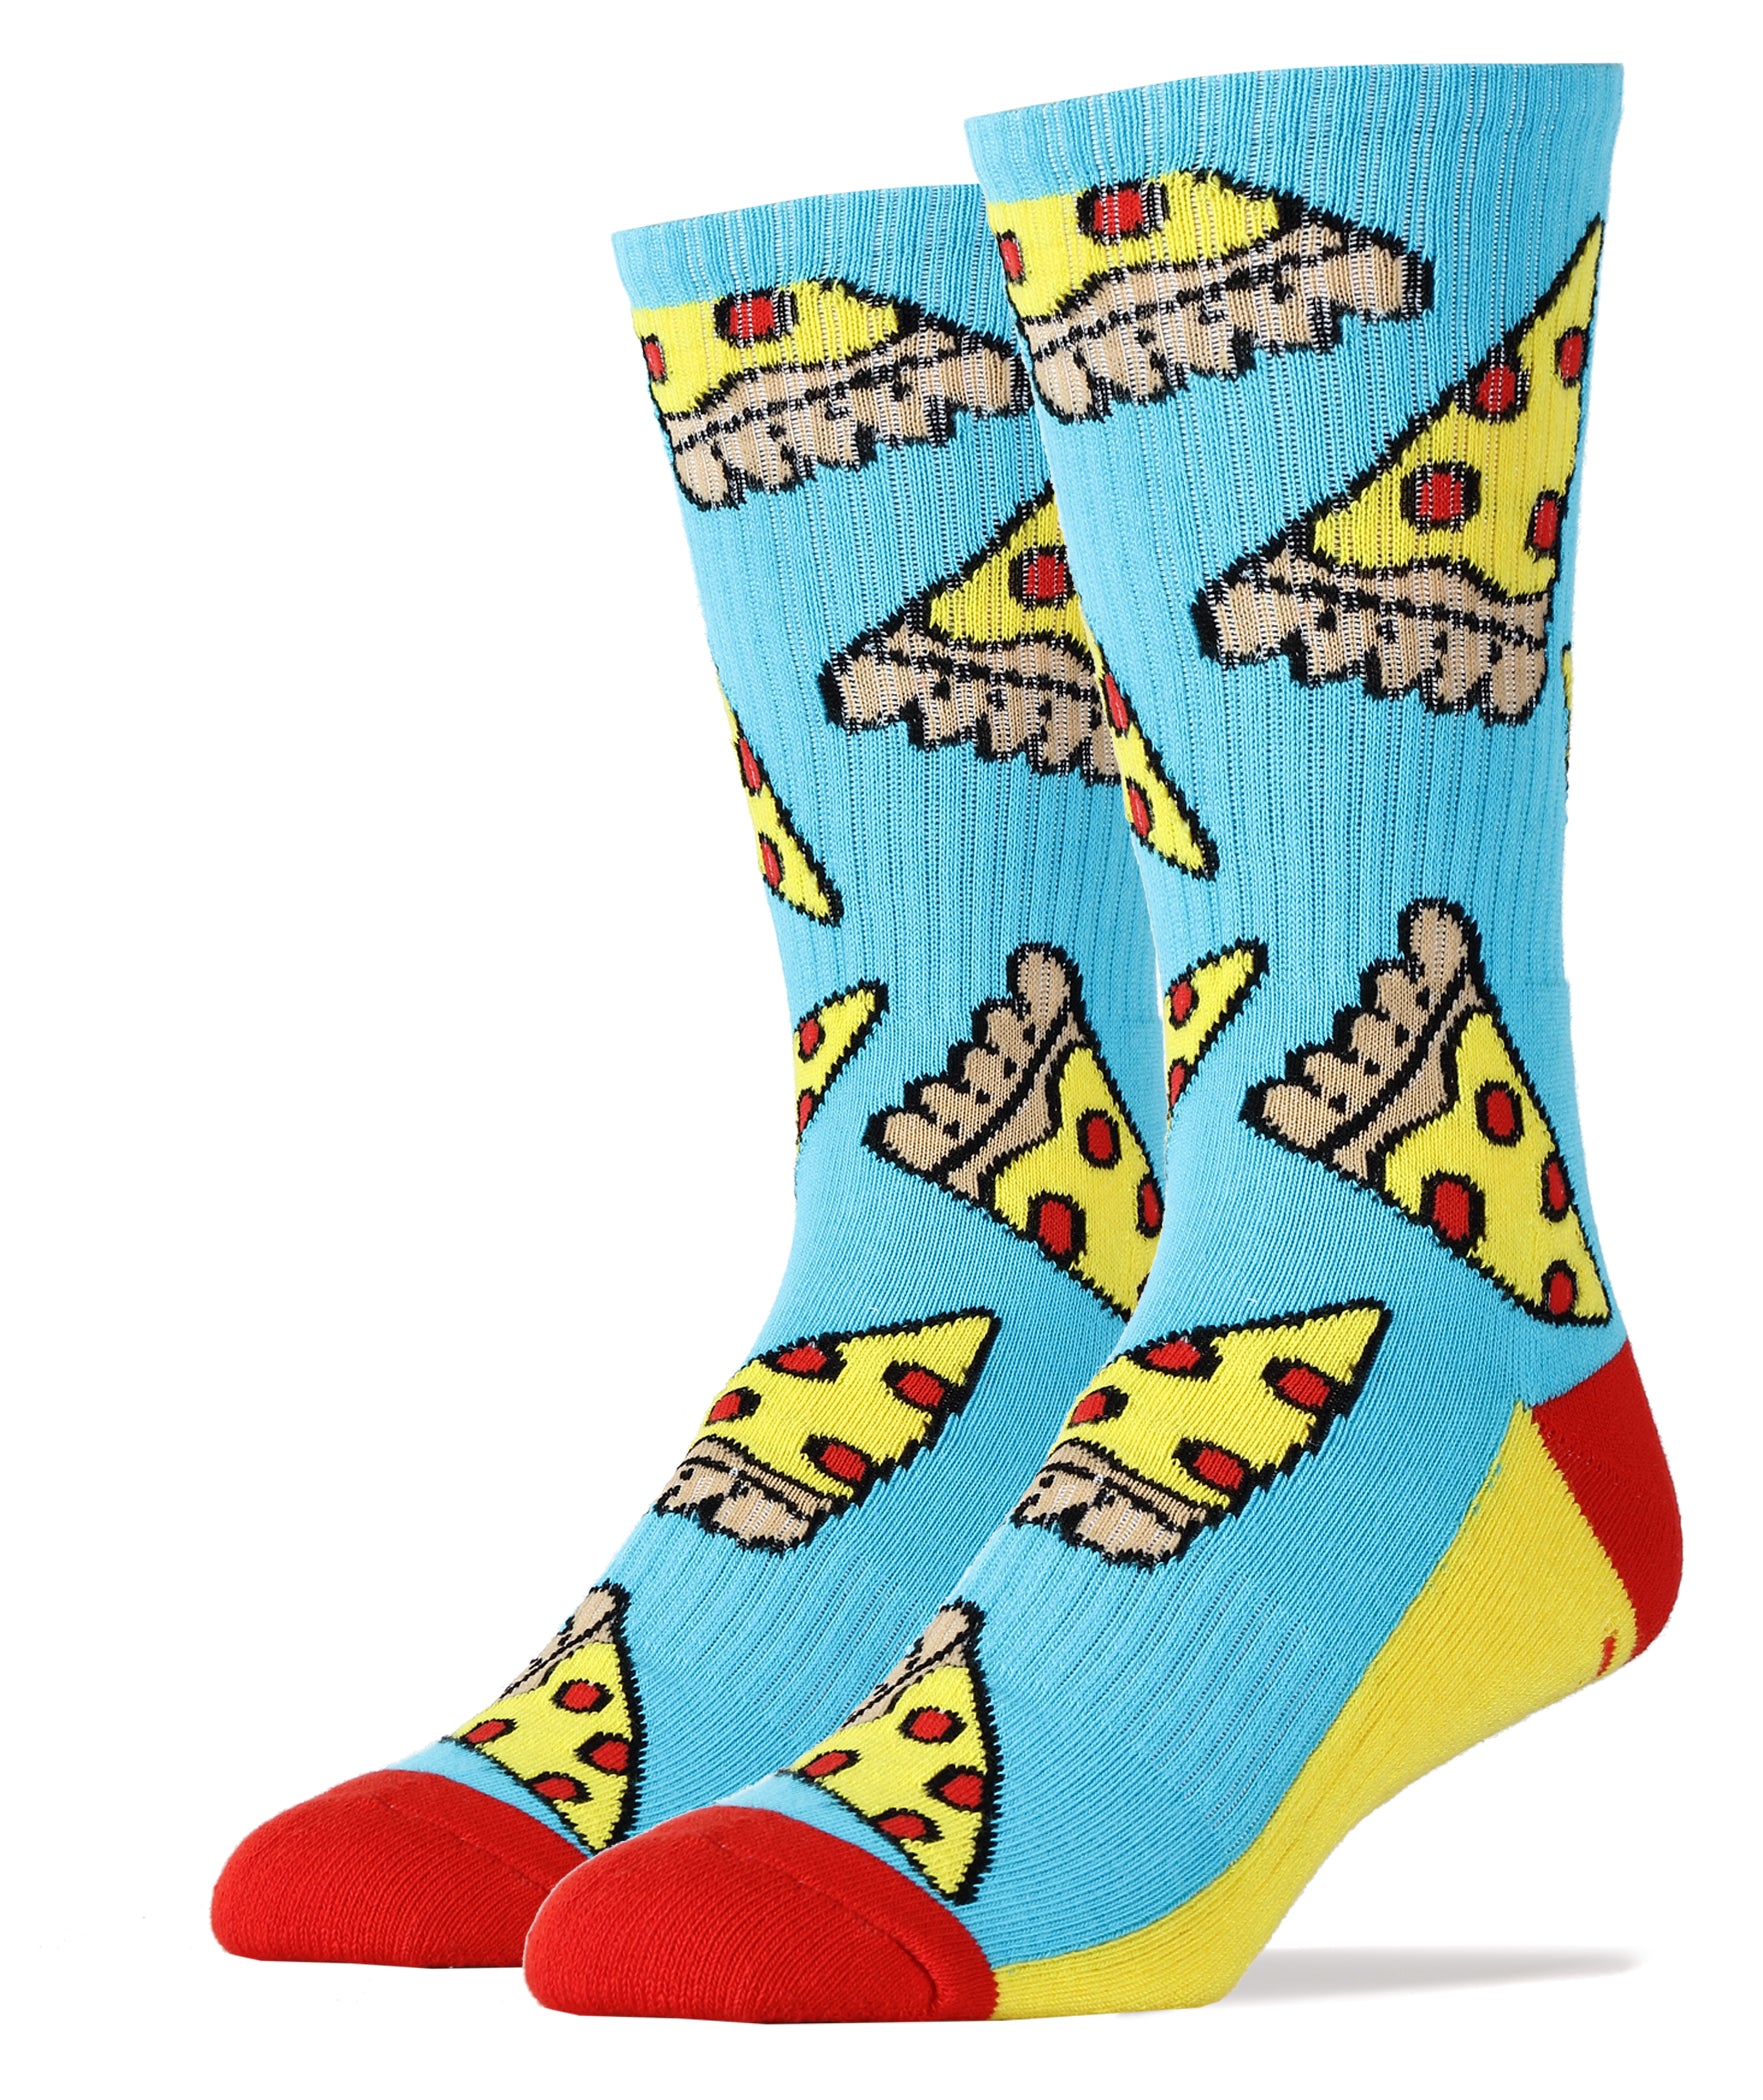 Pizza Party Athletic Socks | Novelty Socks For Men